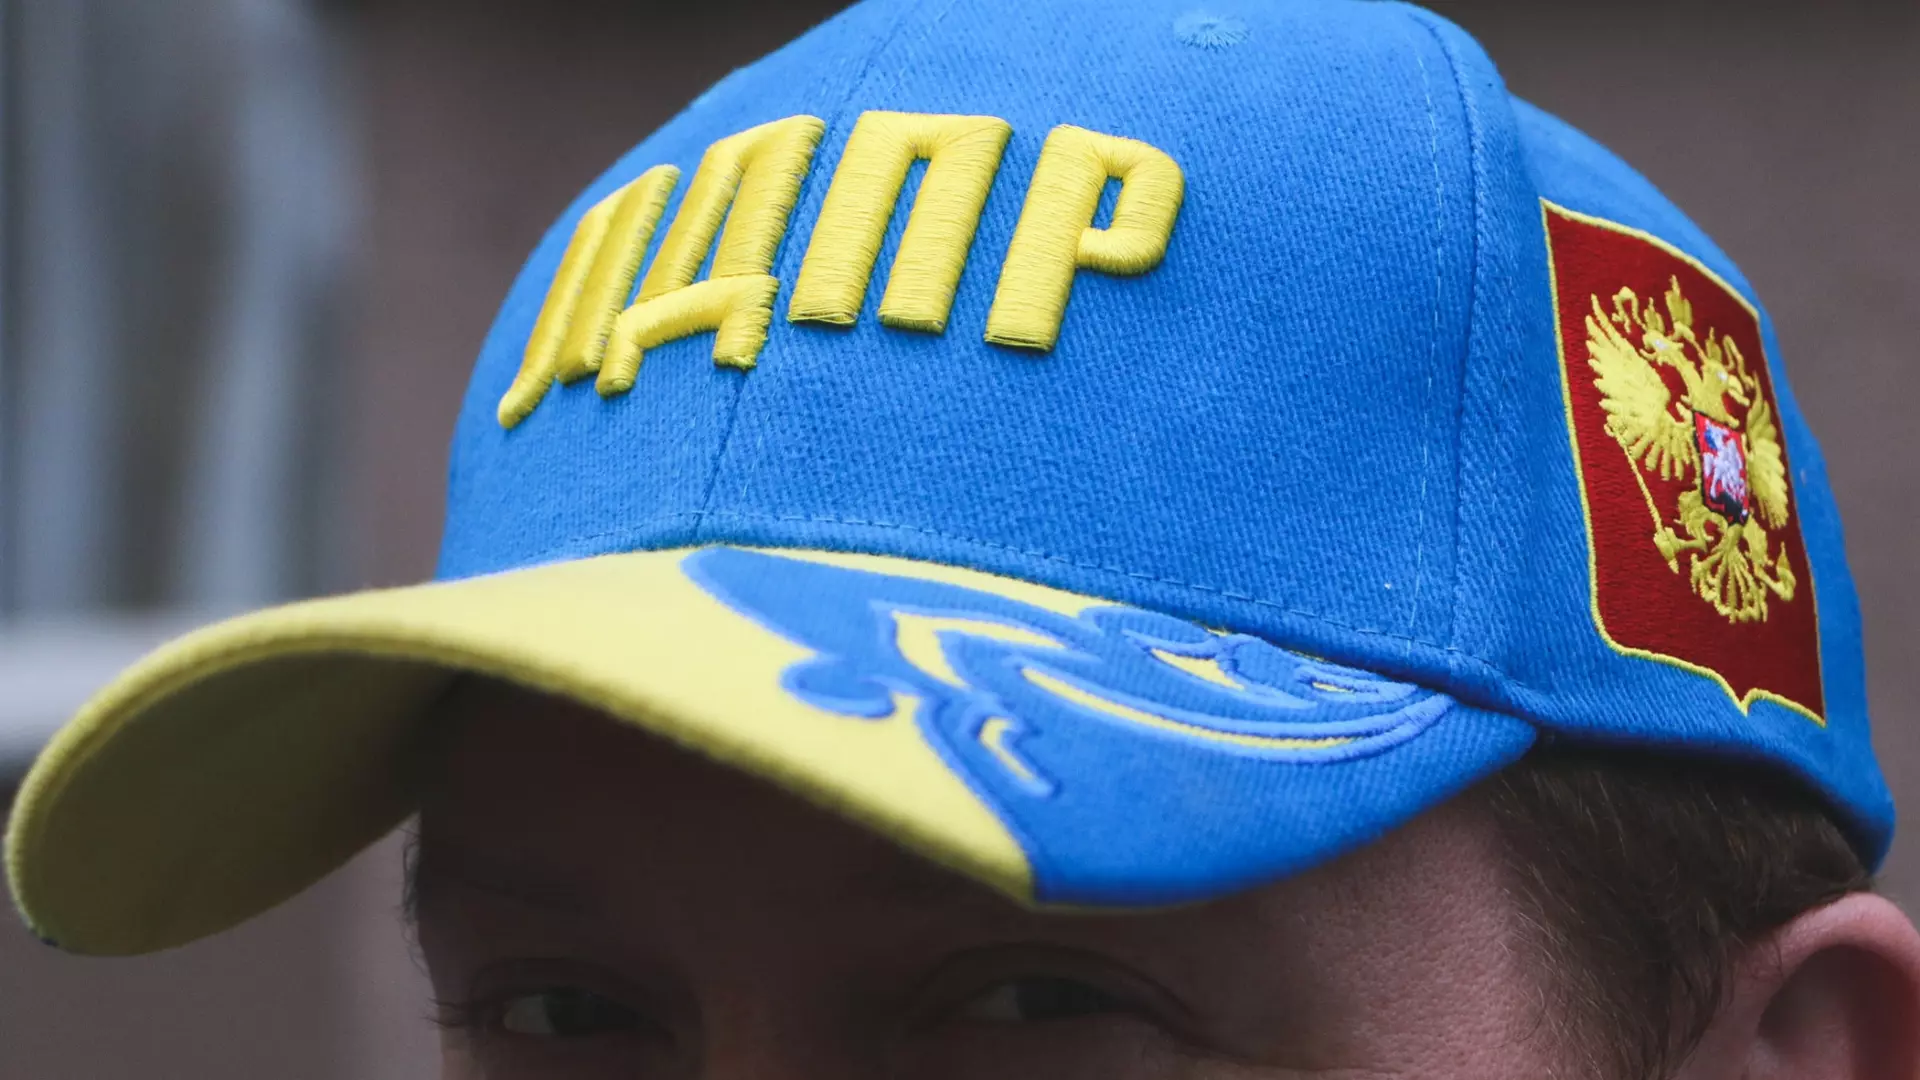 ЛДПР в ХМАО сняла видео в стиле «Слово пацана», назвав другие партии врагами